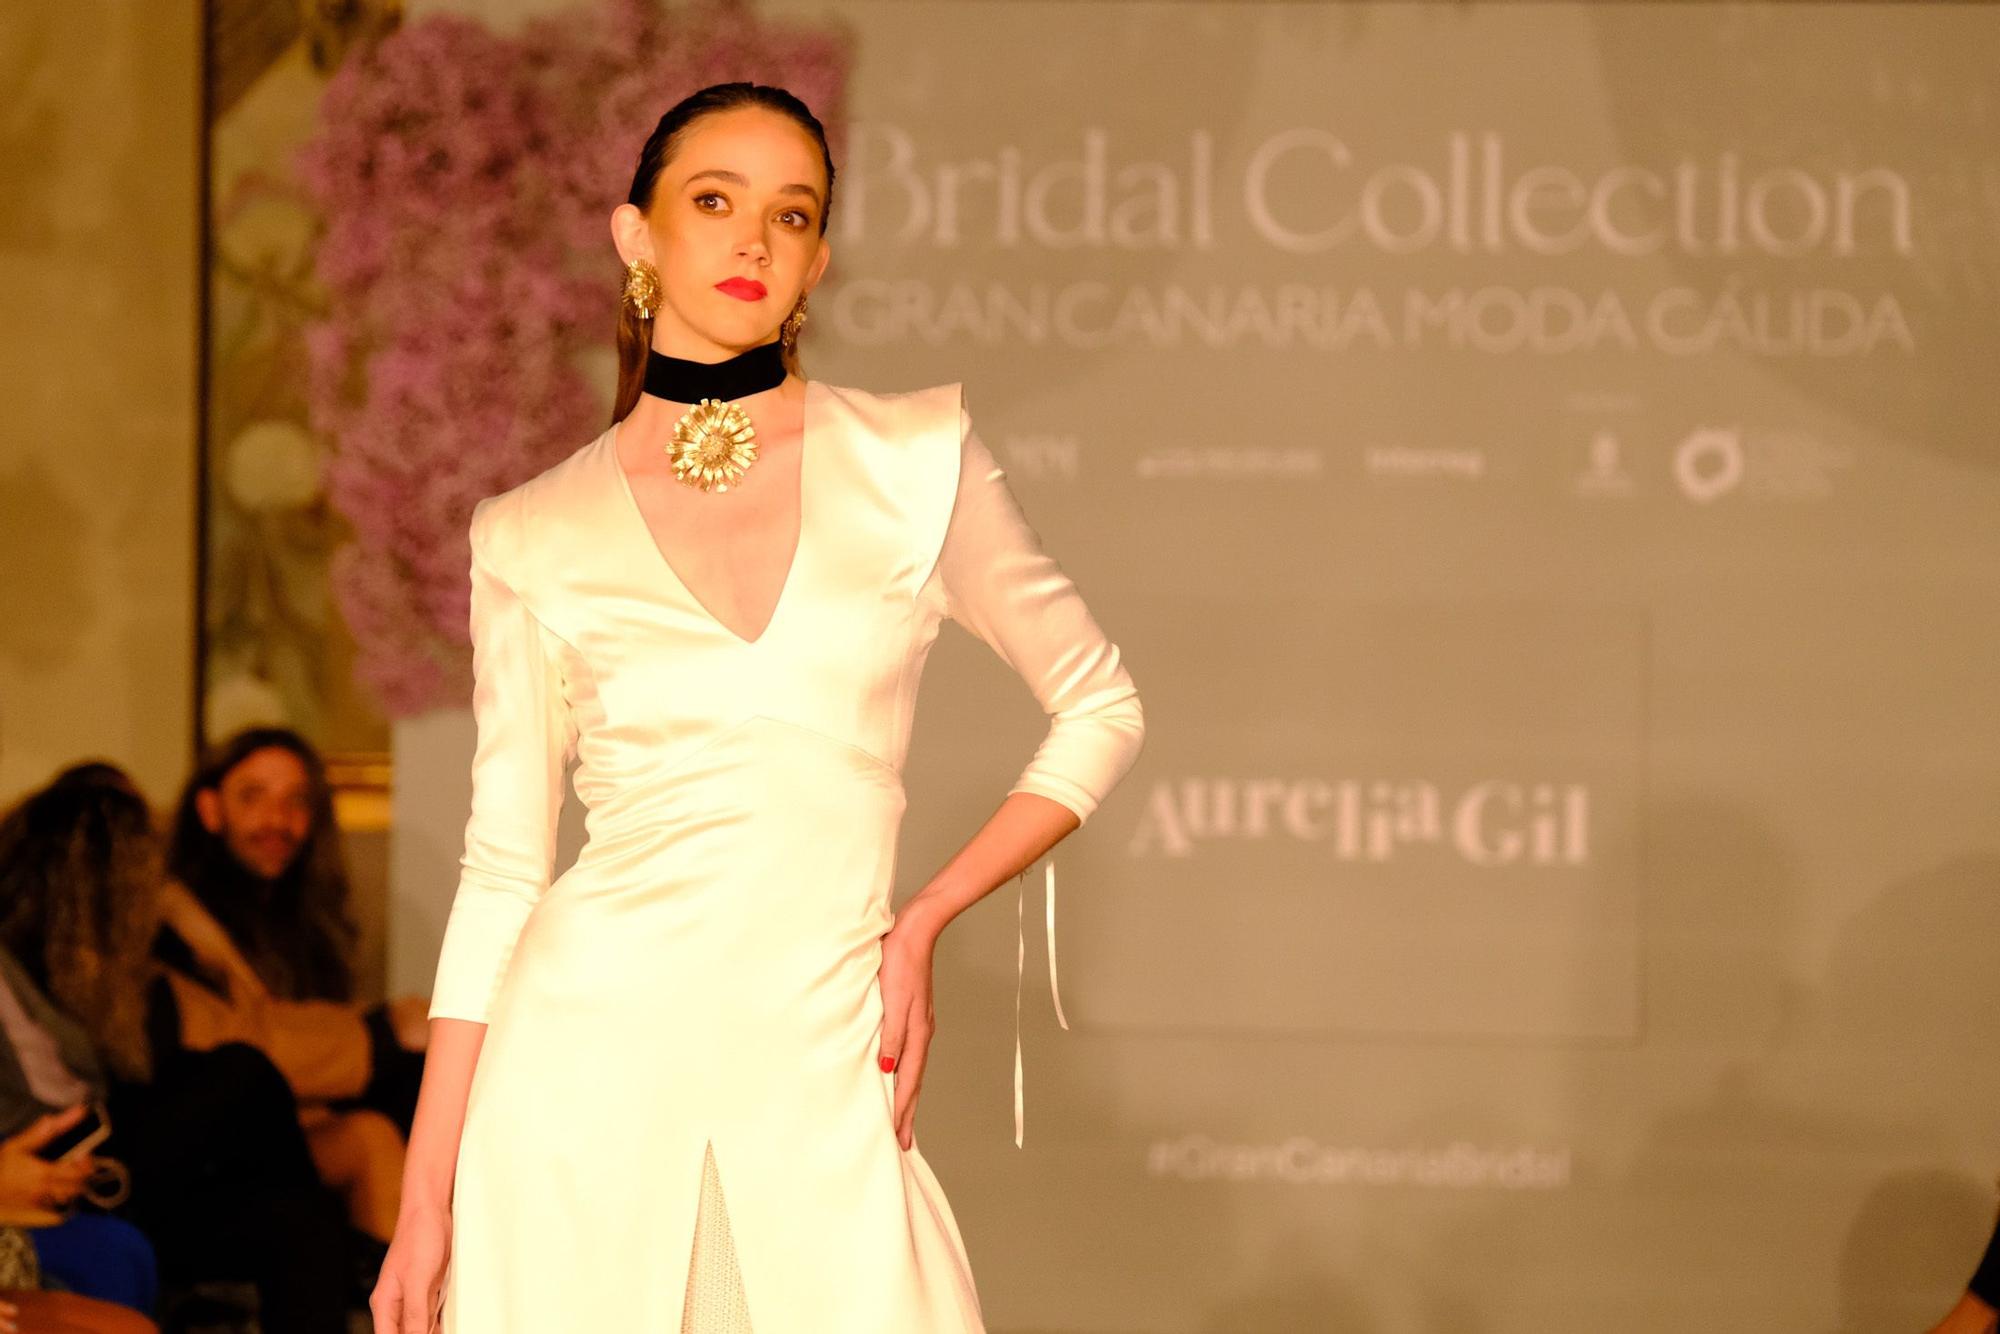 Desfile de Aurelia Gil en la segunda jornada del Bridal Collection Gran Canaria Moda Cálida